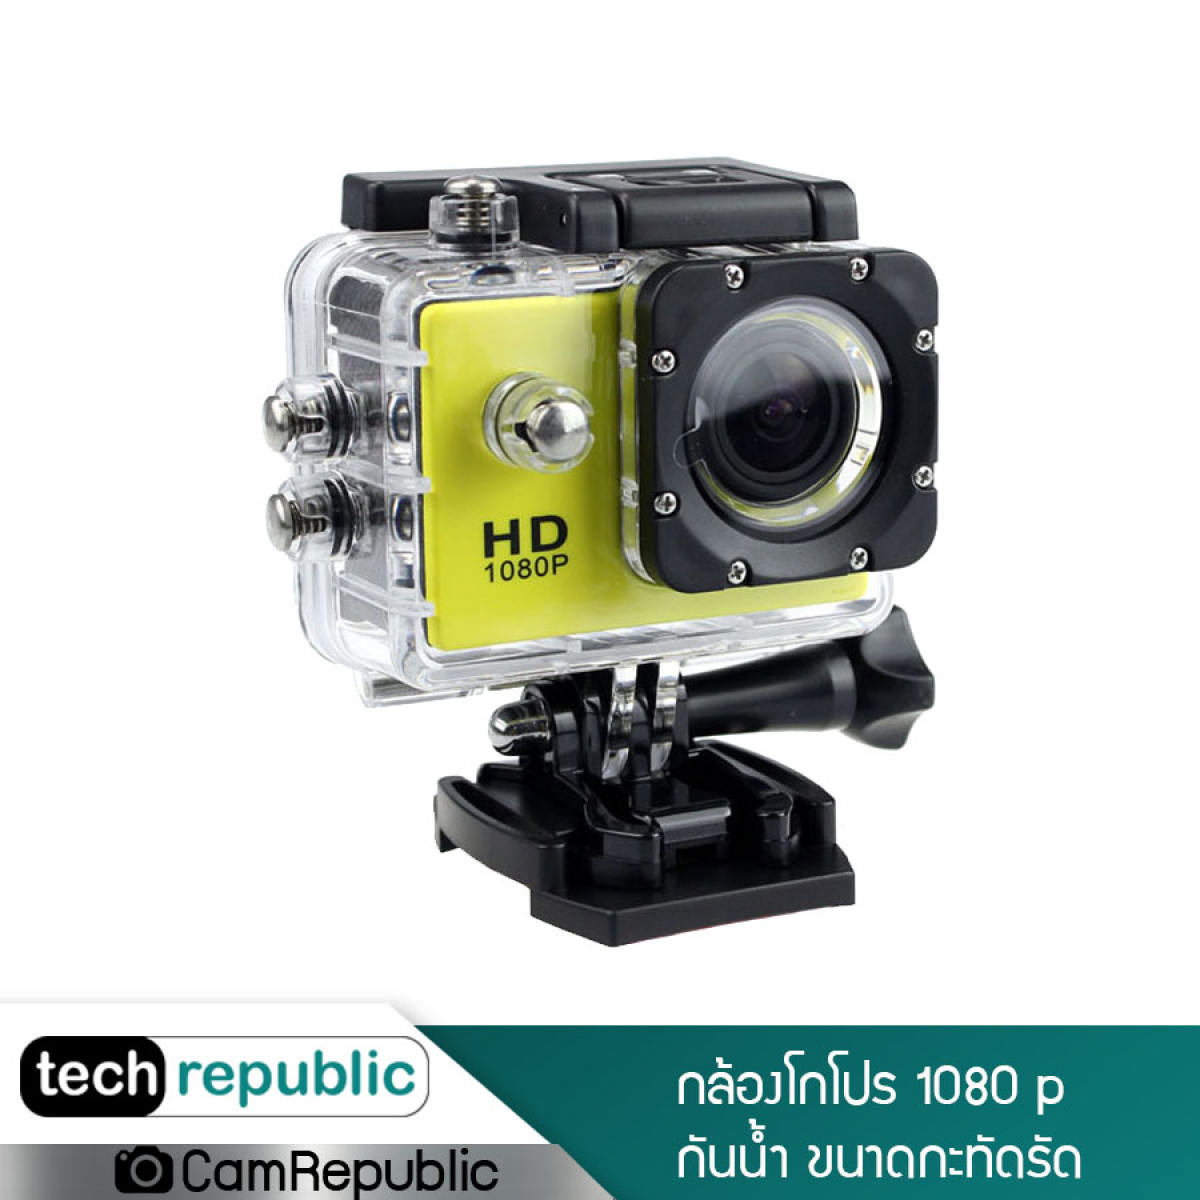 กล้องโกโปร กล้องกันน้ำ กล้องวิดีโอ Waterproof Camera 1080P Full HD กล้องติดหมวก  กล้องติดหน้ารถ กล้อง DV Sport Camera กันน้ำได้ลึกถึง 30 เมตร Techrepublic